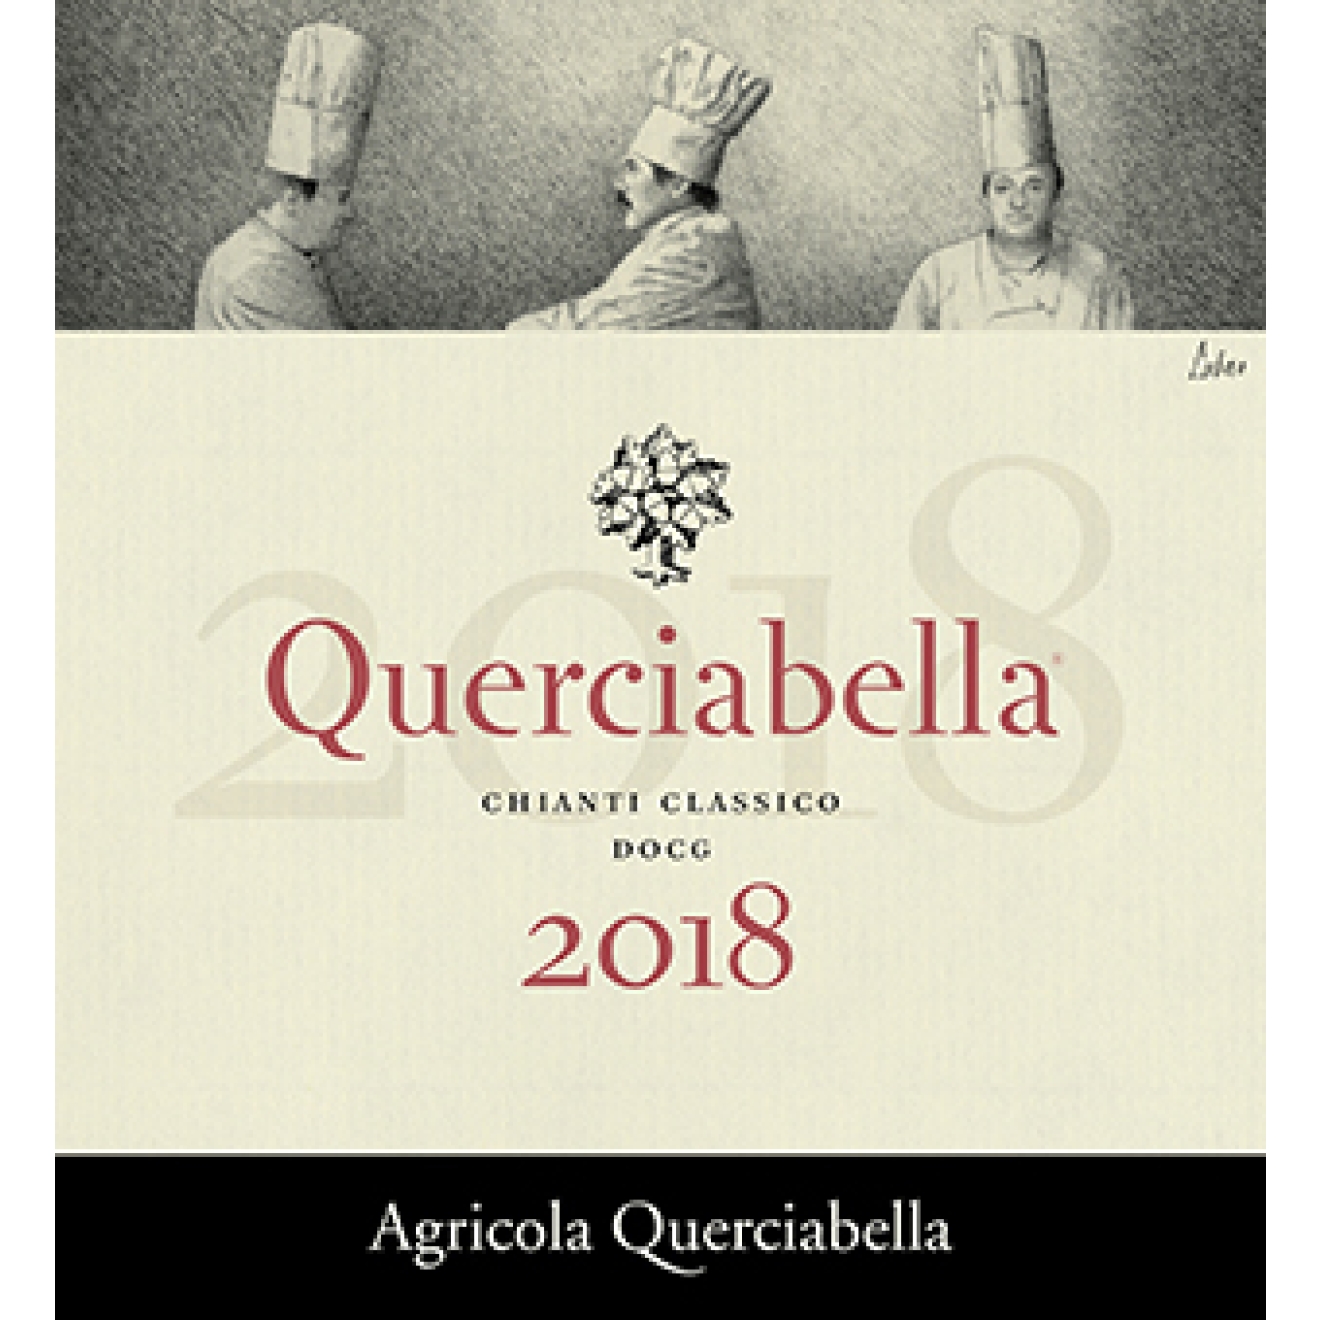 Chianti classico 2018 DOCG Querciabella